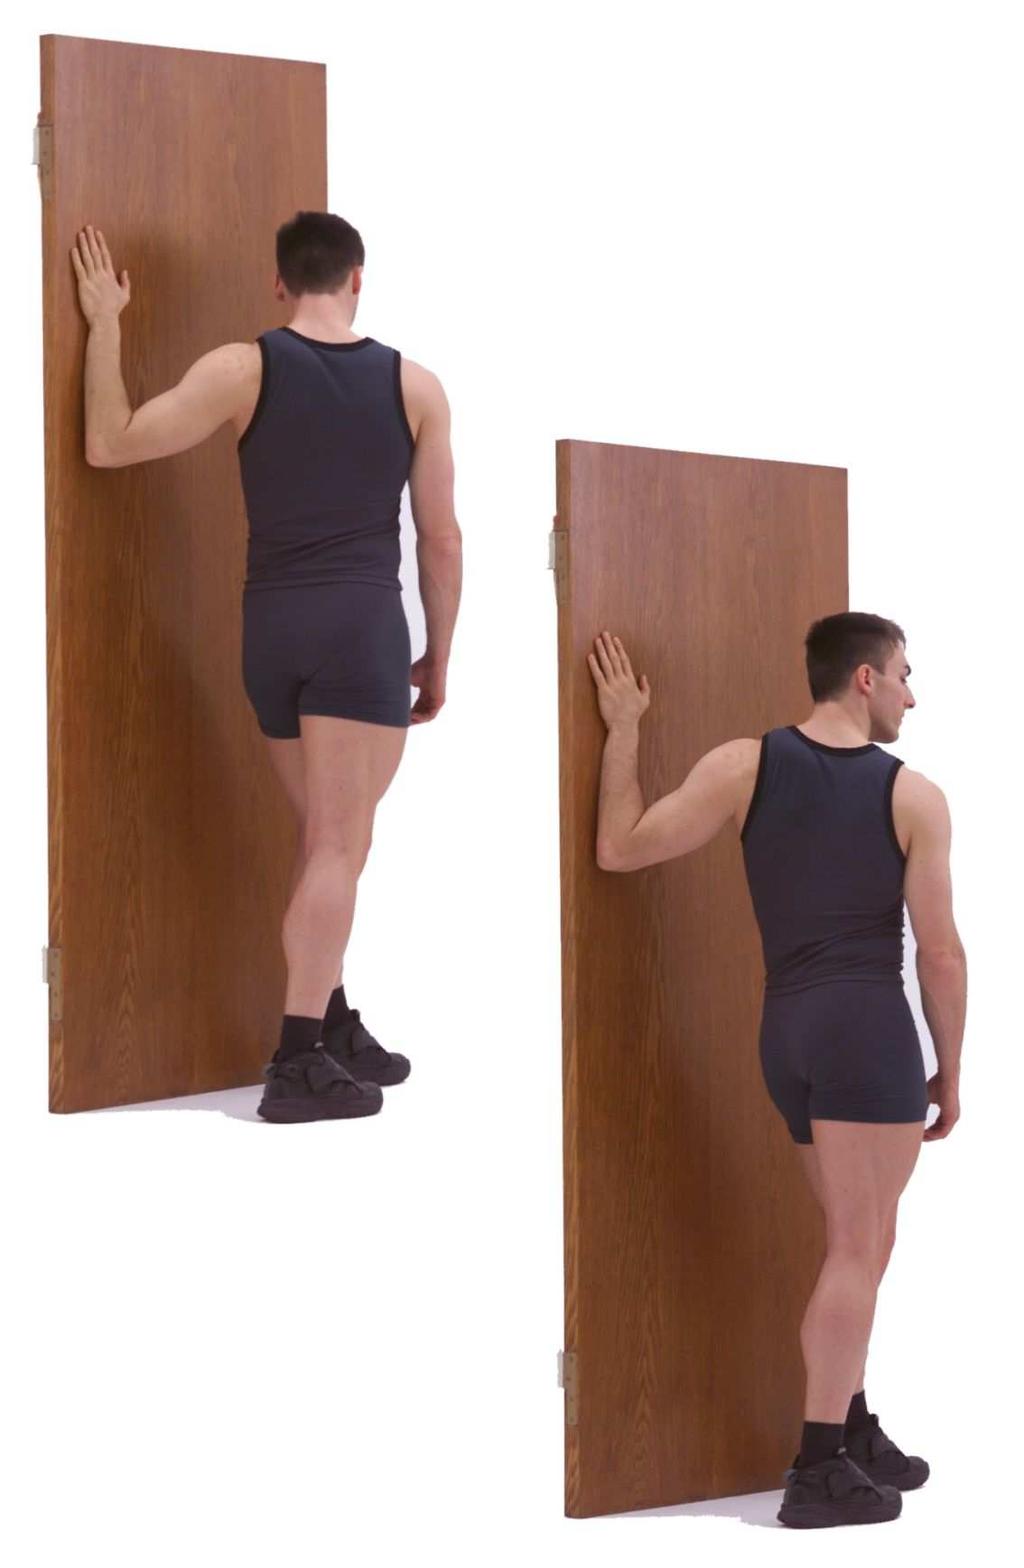 Brust (oberer Bereich) Als Ausgangsstellung die Schrittstellung mit der linken Schulter nahe einer Wand einnehmen. Das linke wandnahe Bein steht vorne, das rechte wandferne Bein hinten.